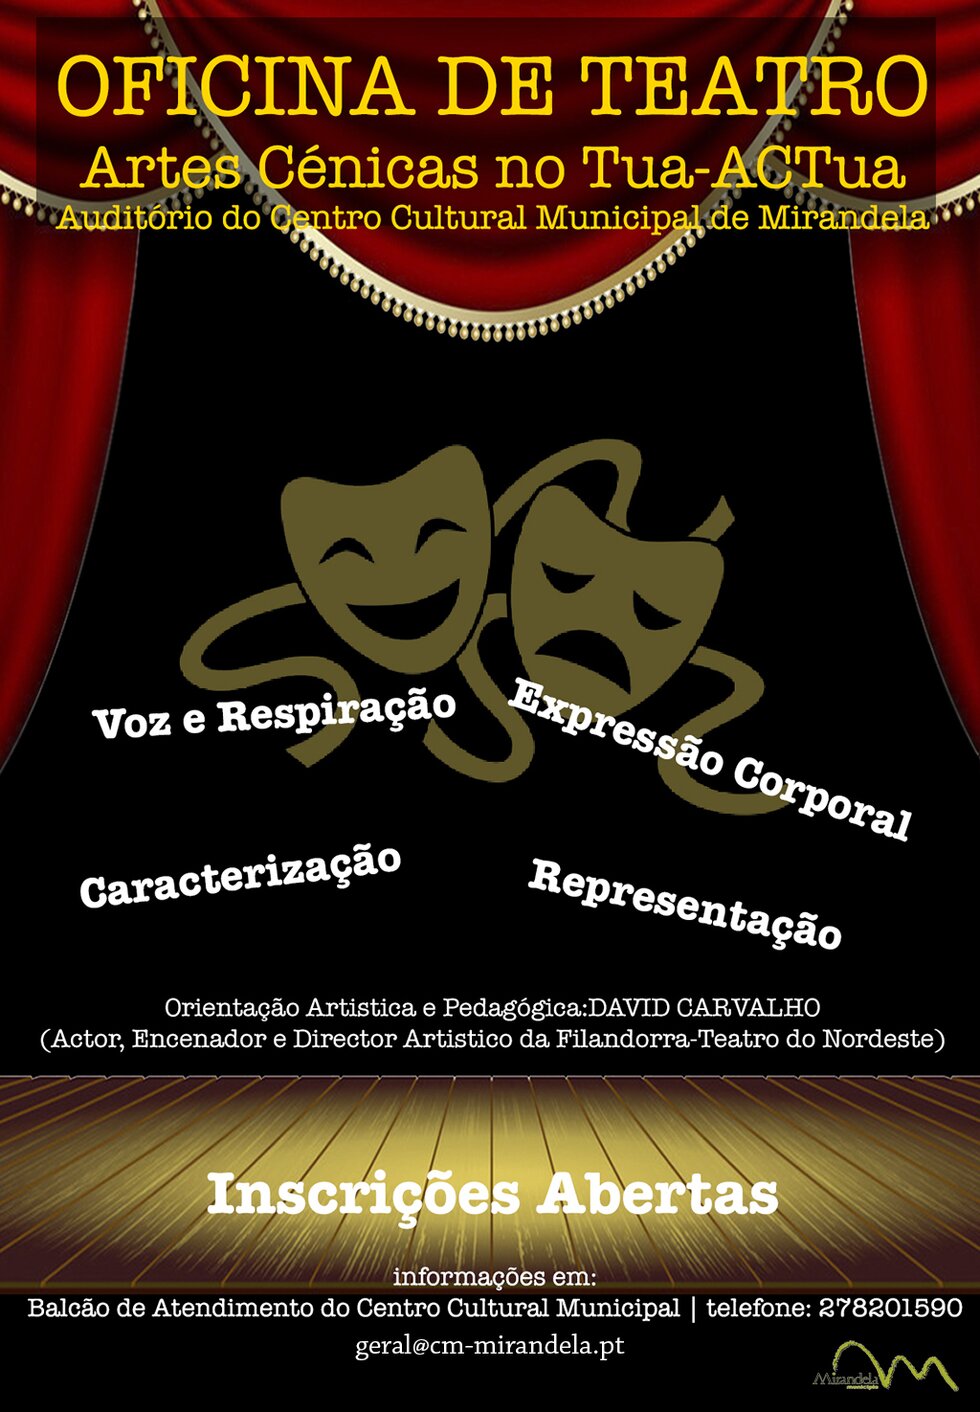 JANEIRO_Oficina_de_Teatro_1